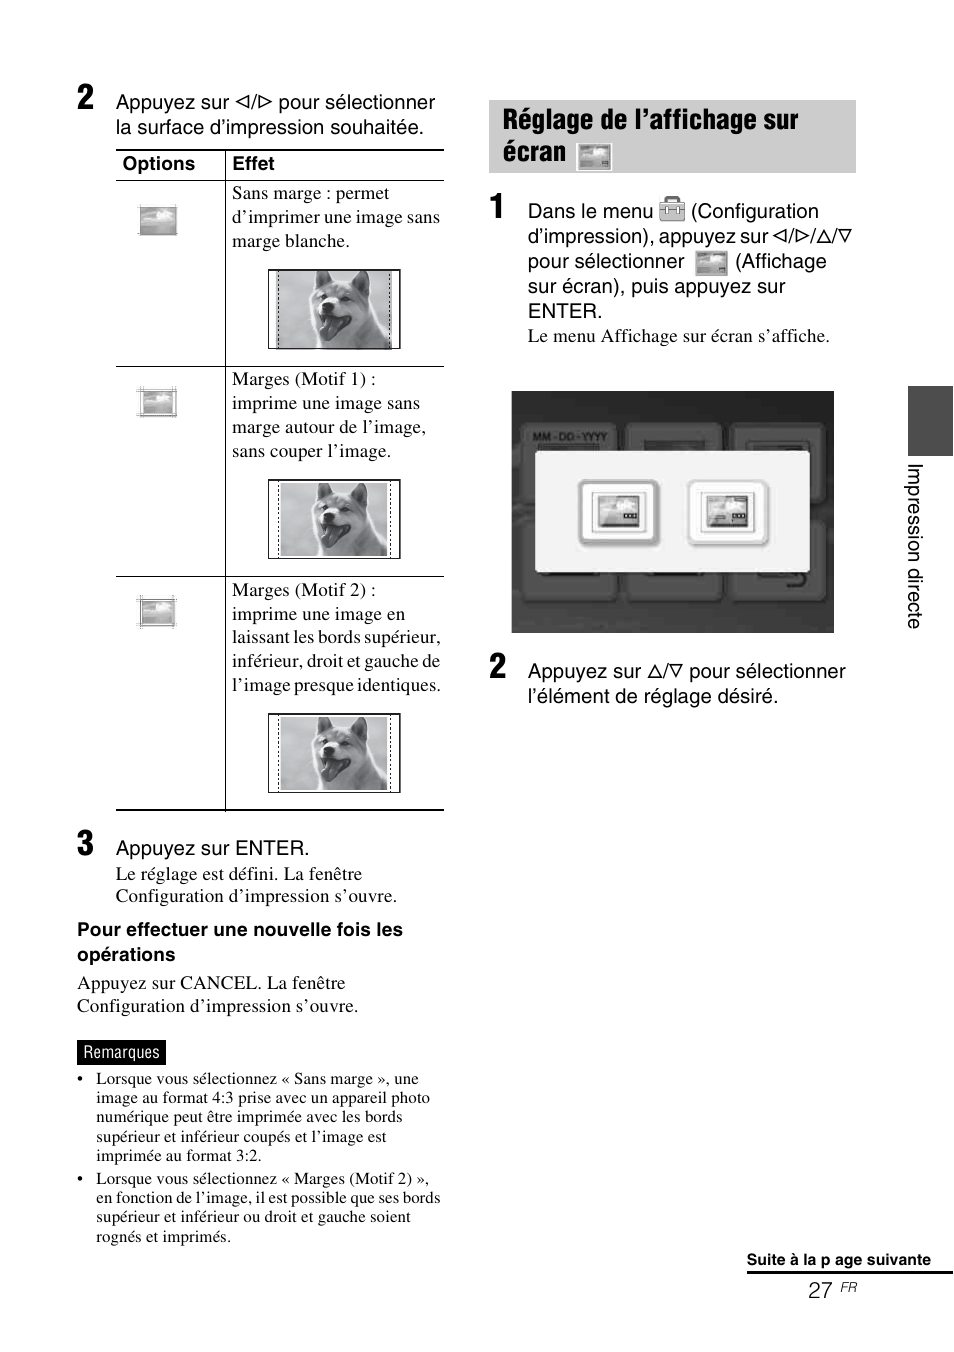 Réglage de l’affichage sur écran | Sony DPP-FP65 Manuel d'utilisation | Page 27 / 72